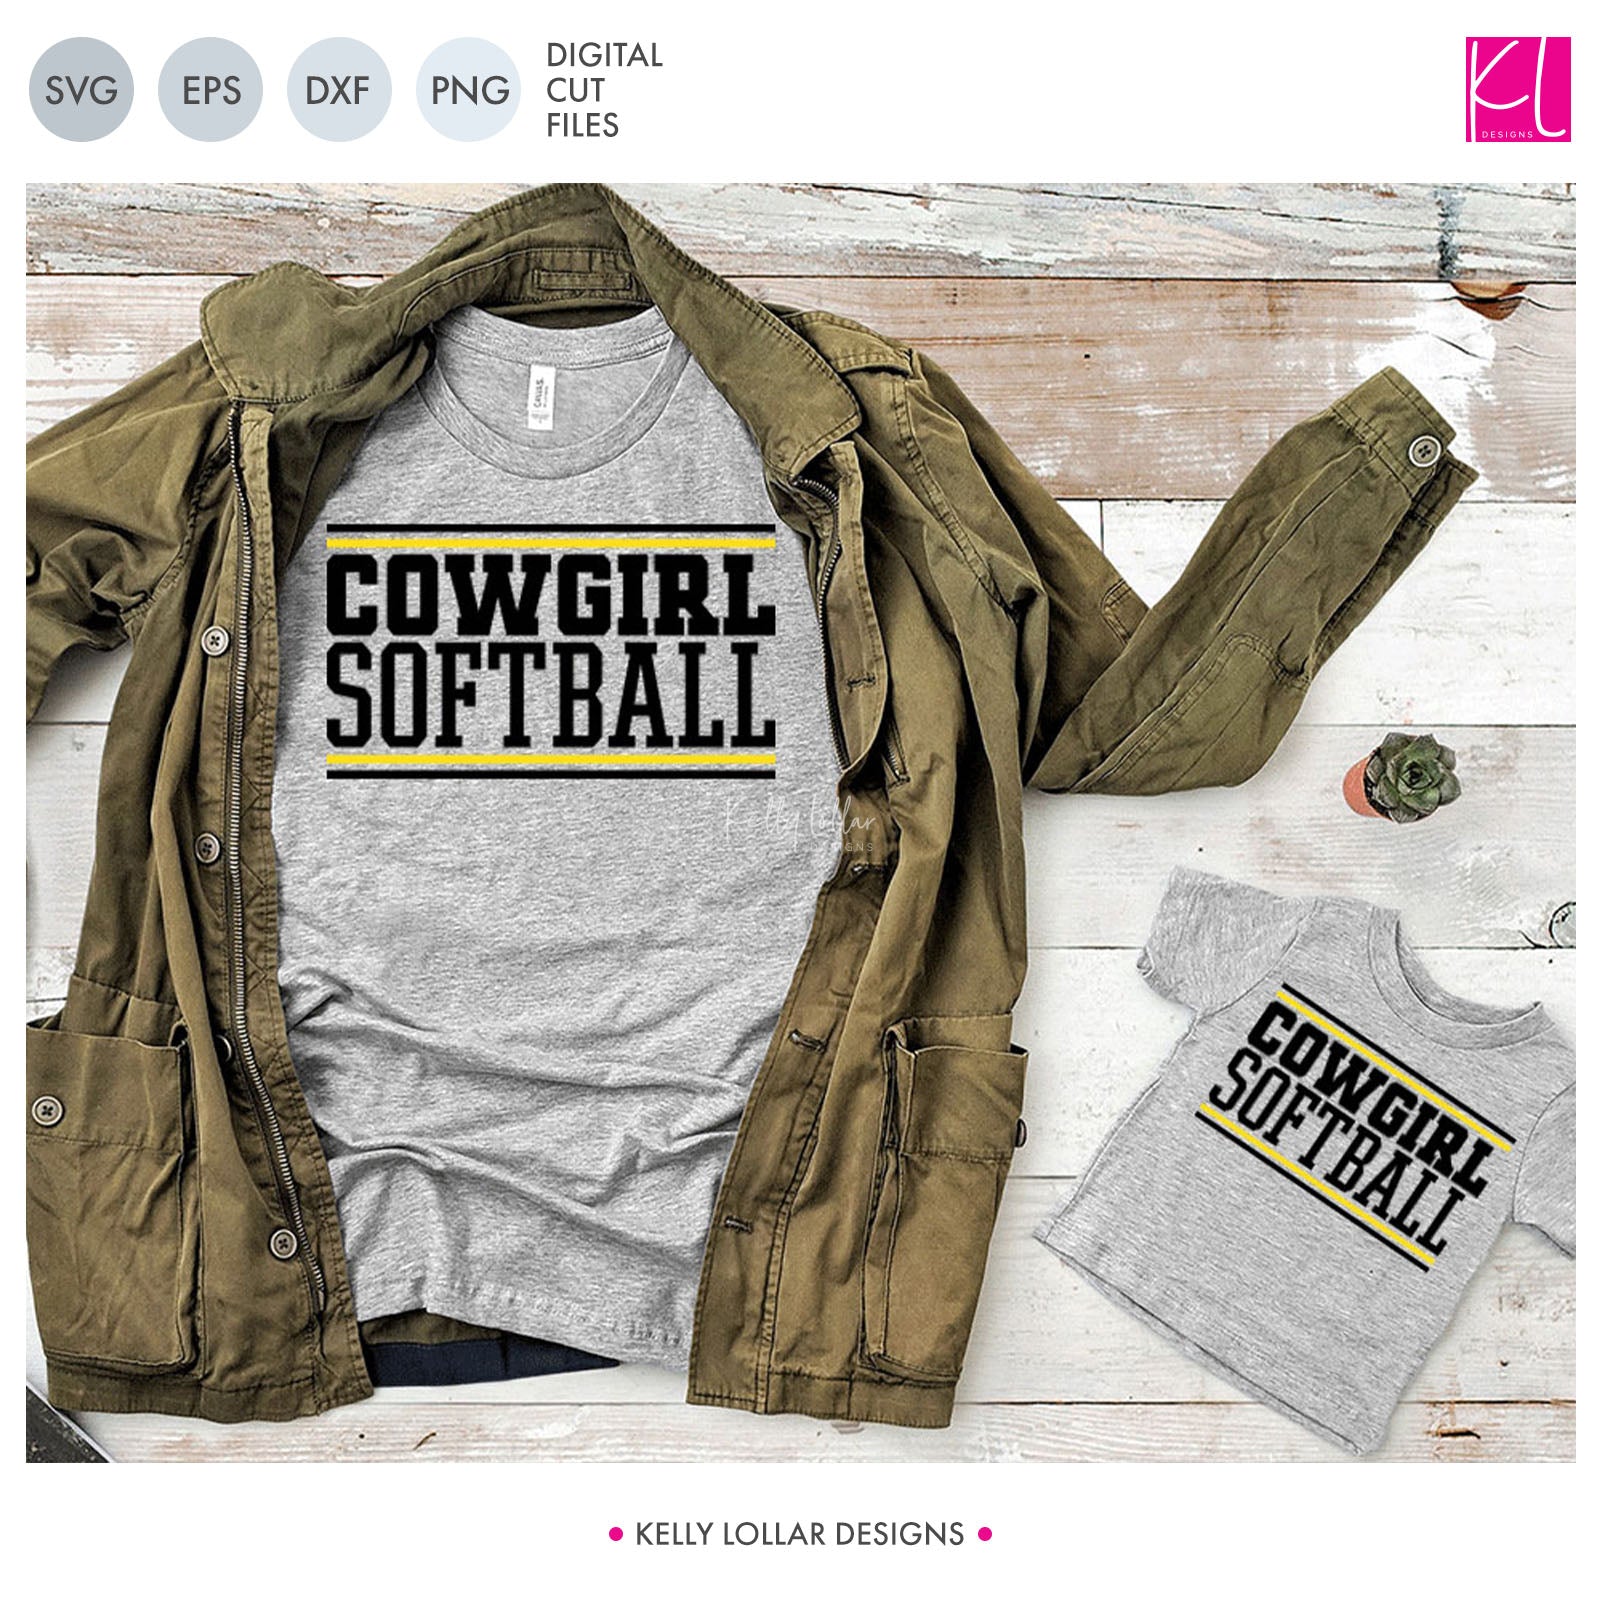 Cowboys softball apparel